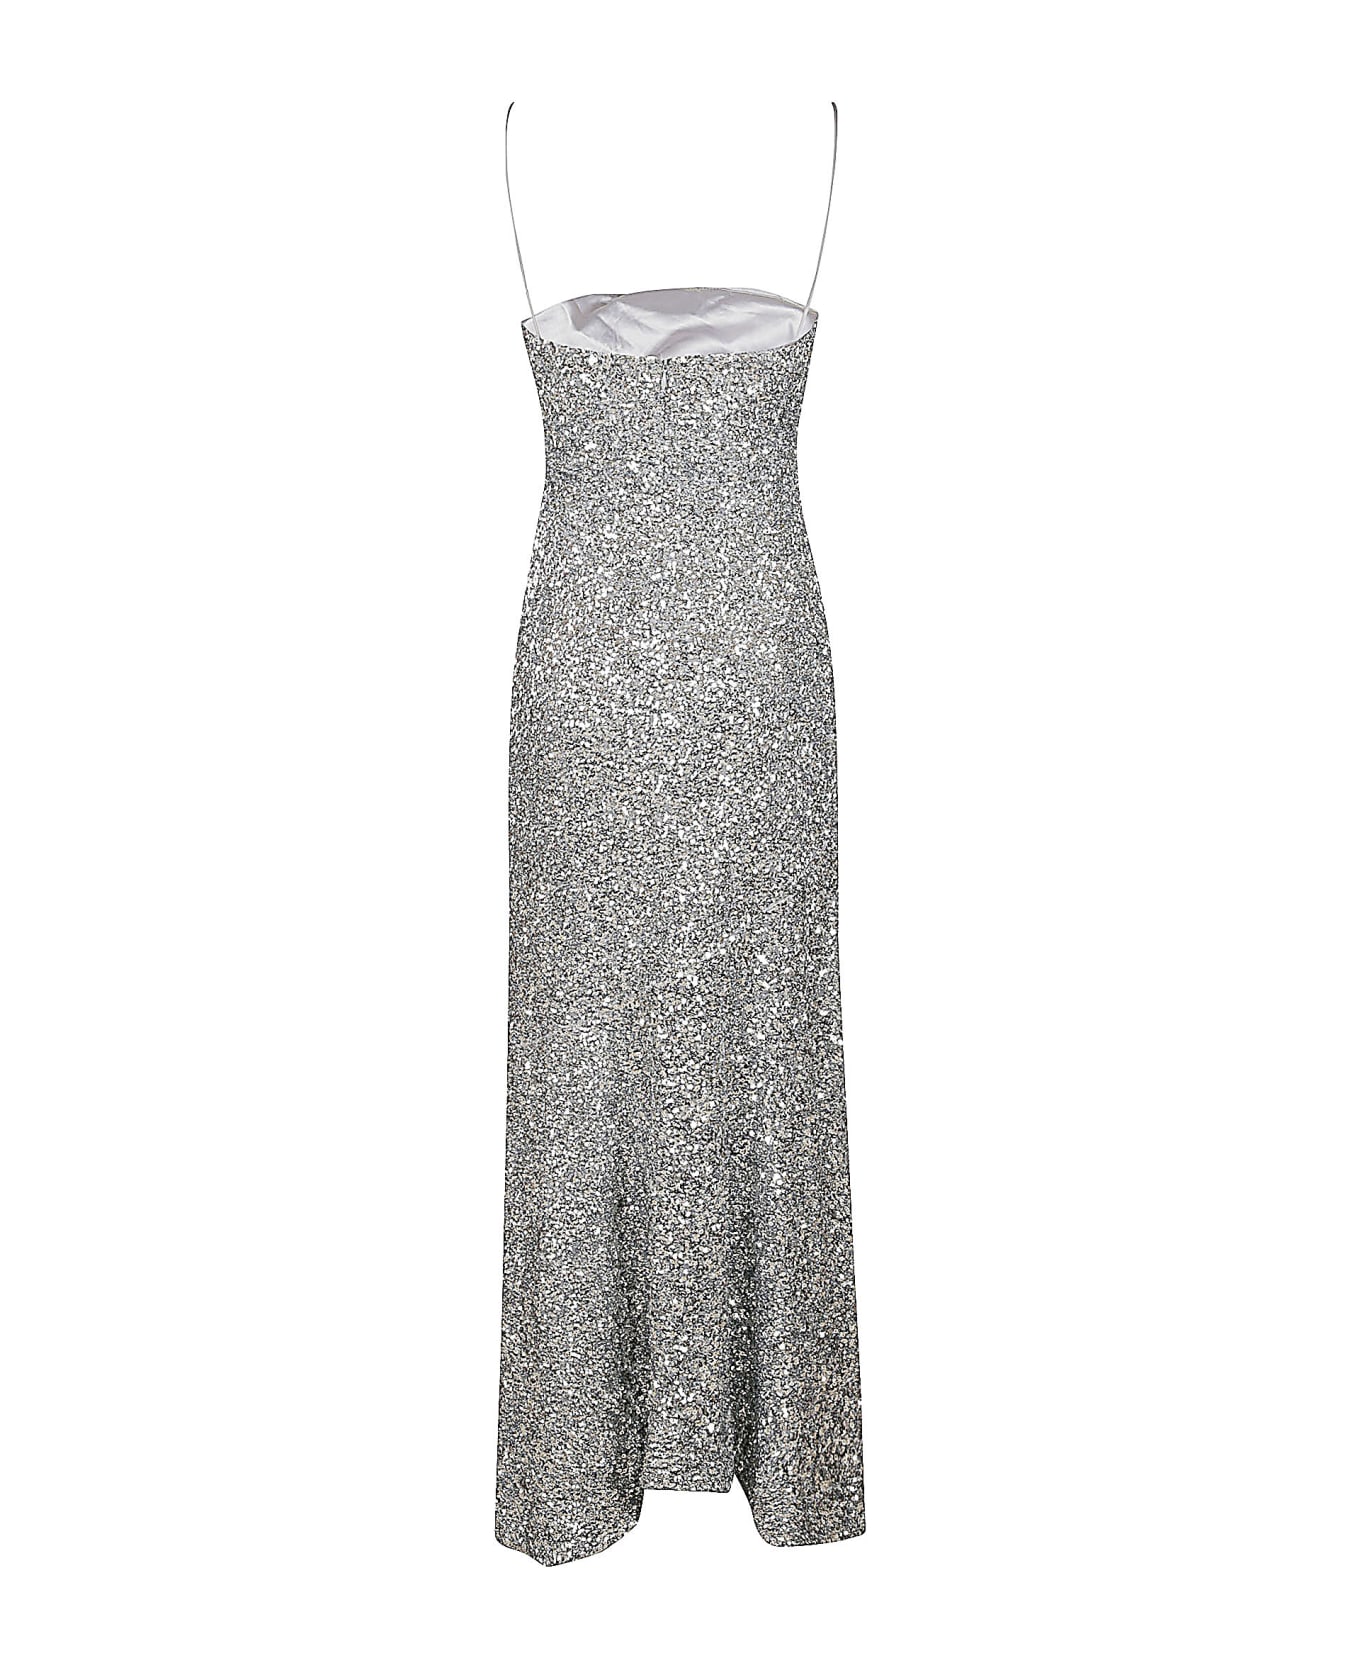 Ganni All-over Metallic Embellished Dress - Silver